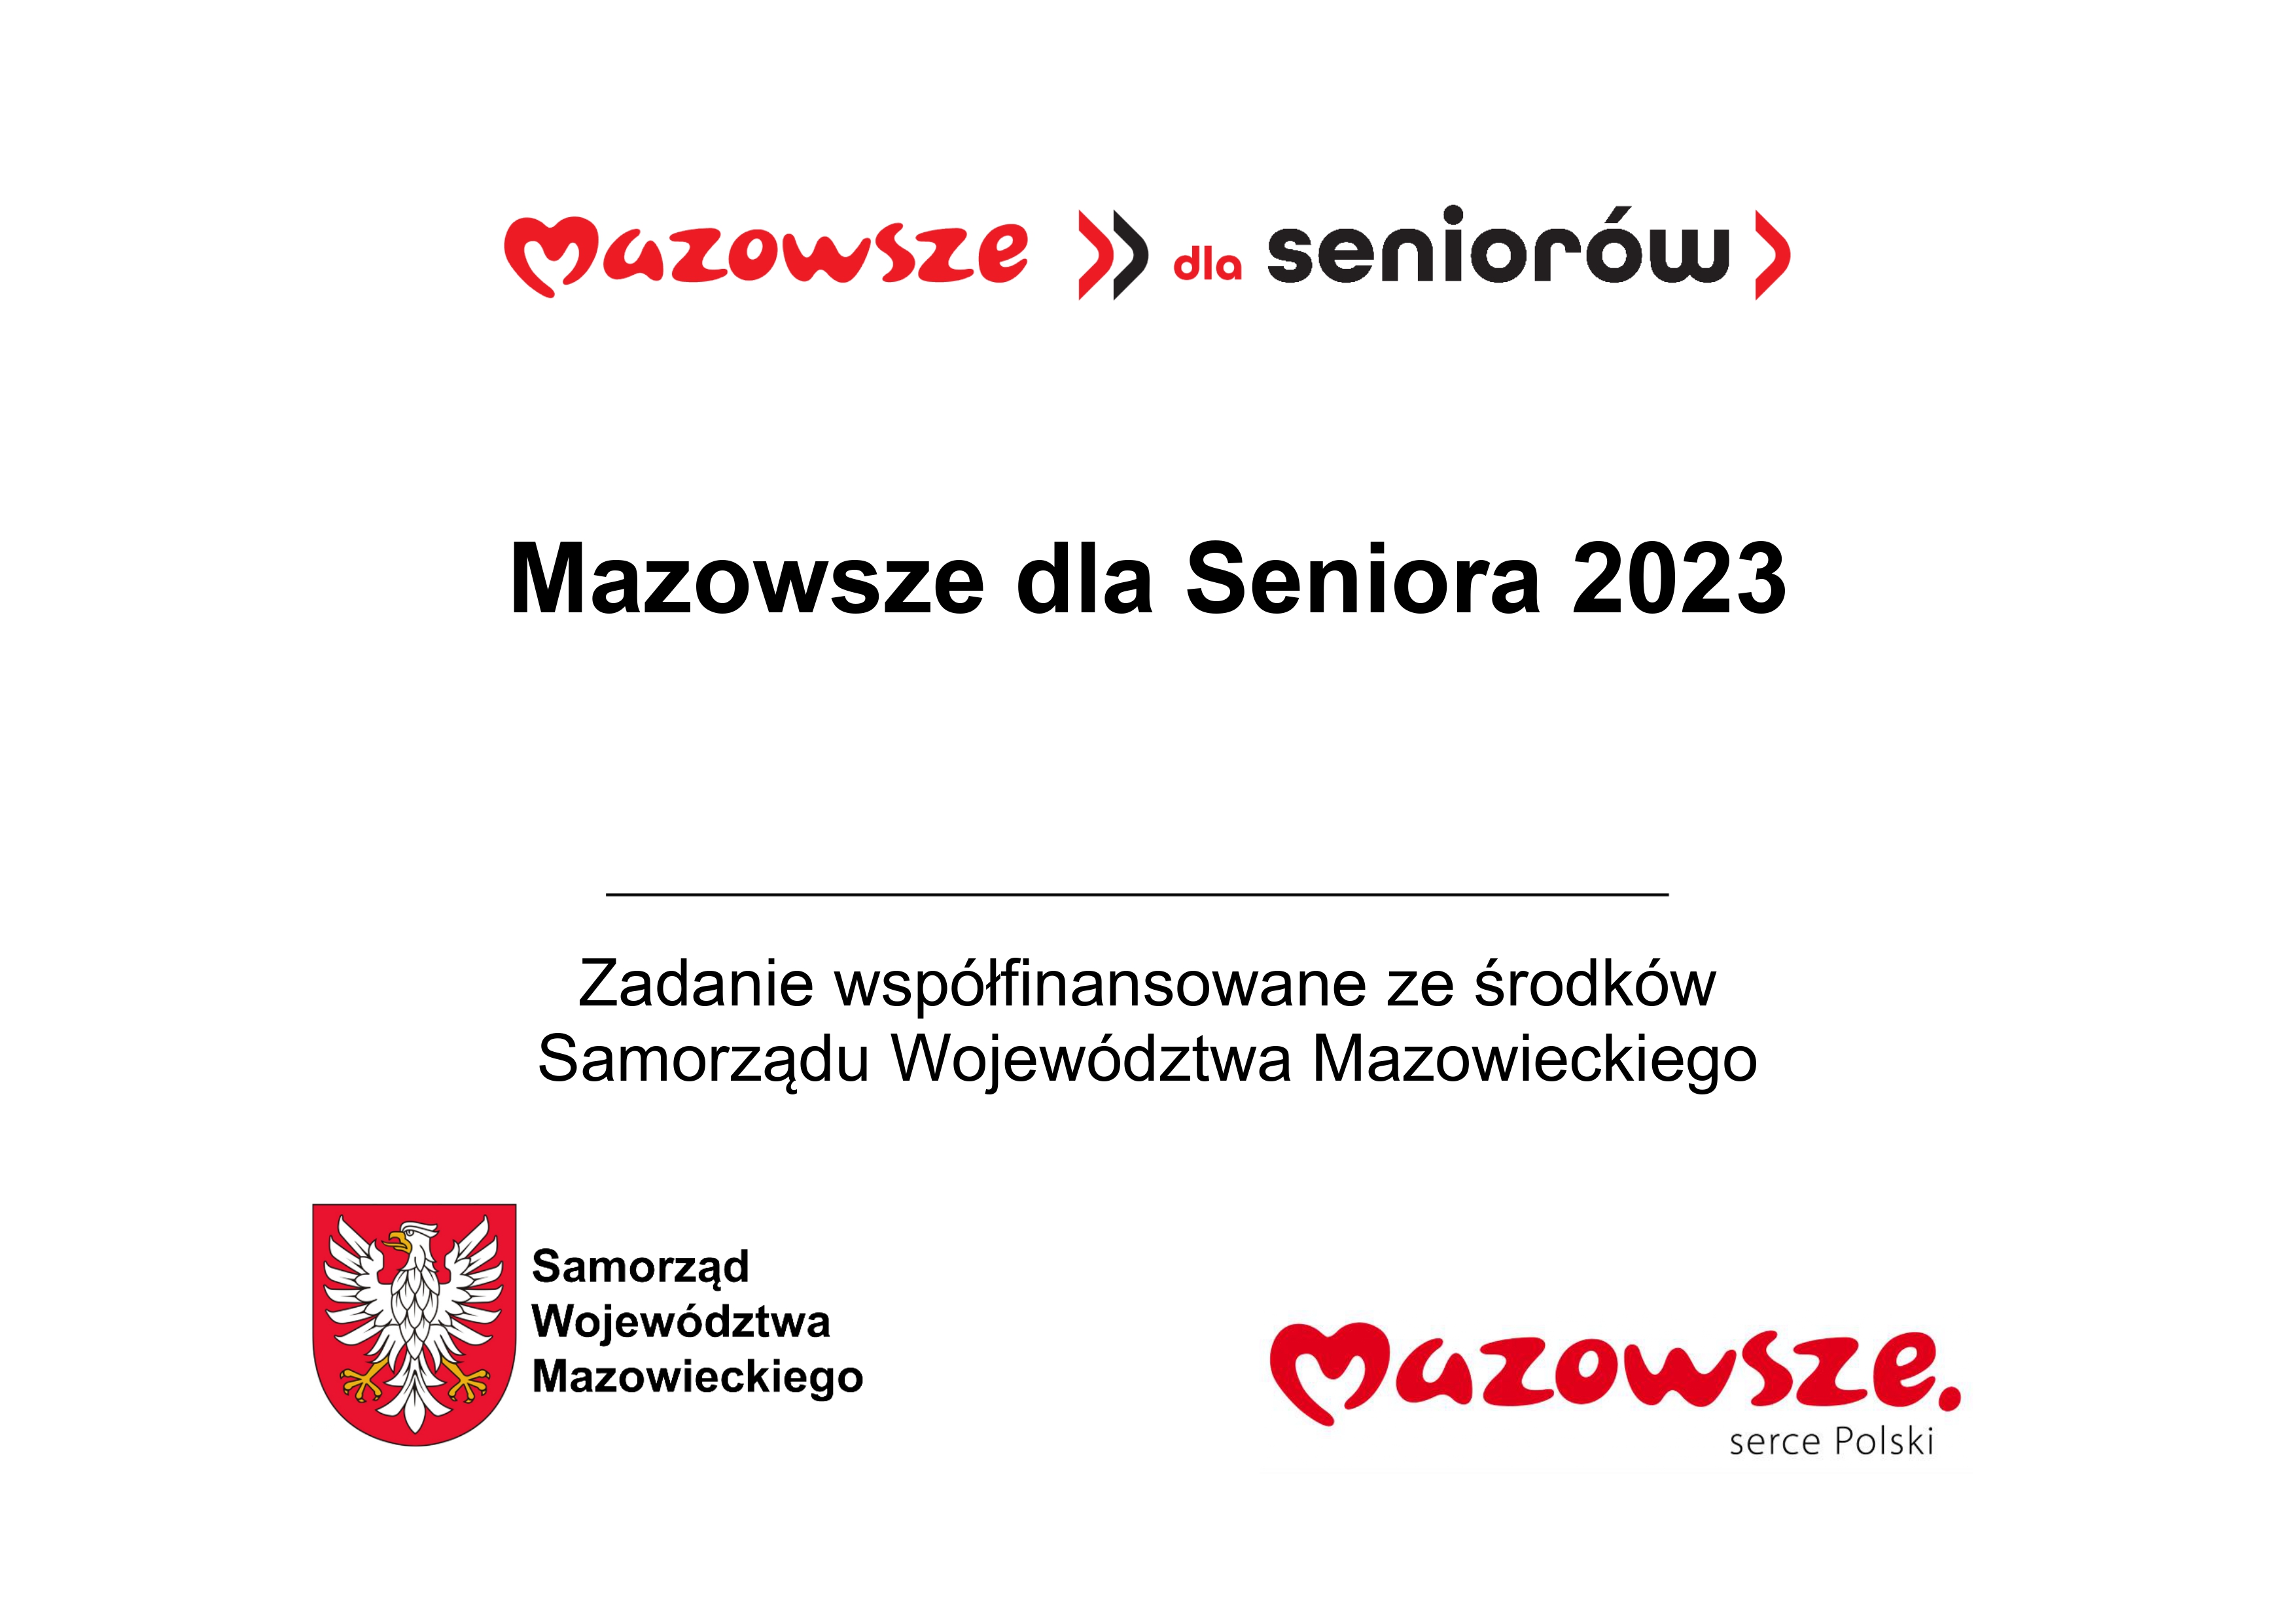 mazowsze_dla_seniorow_wzor_page-0001.jpg (754 KB)